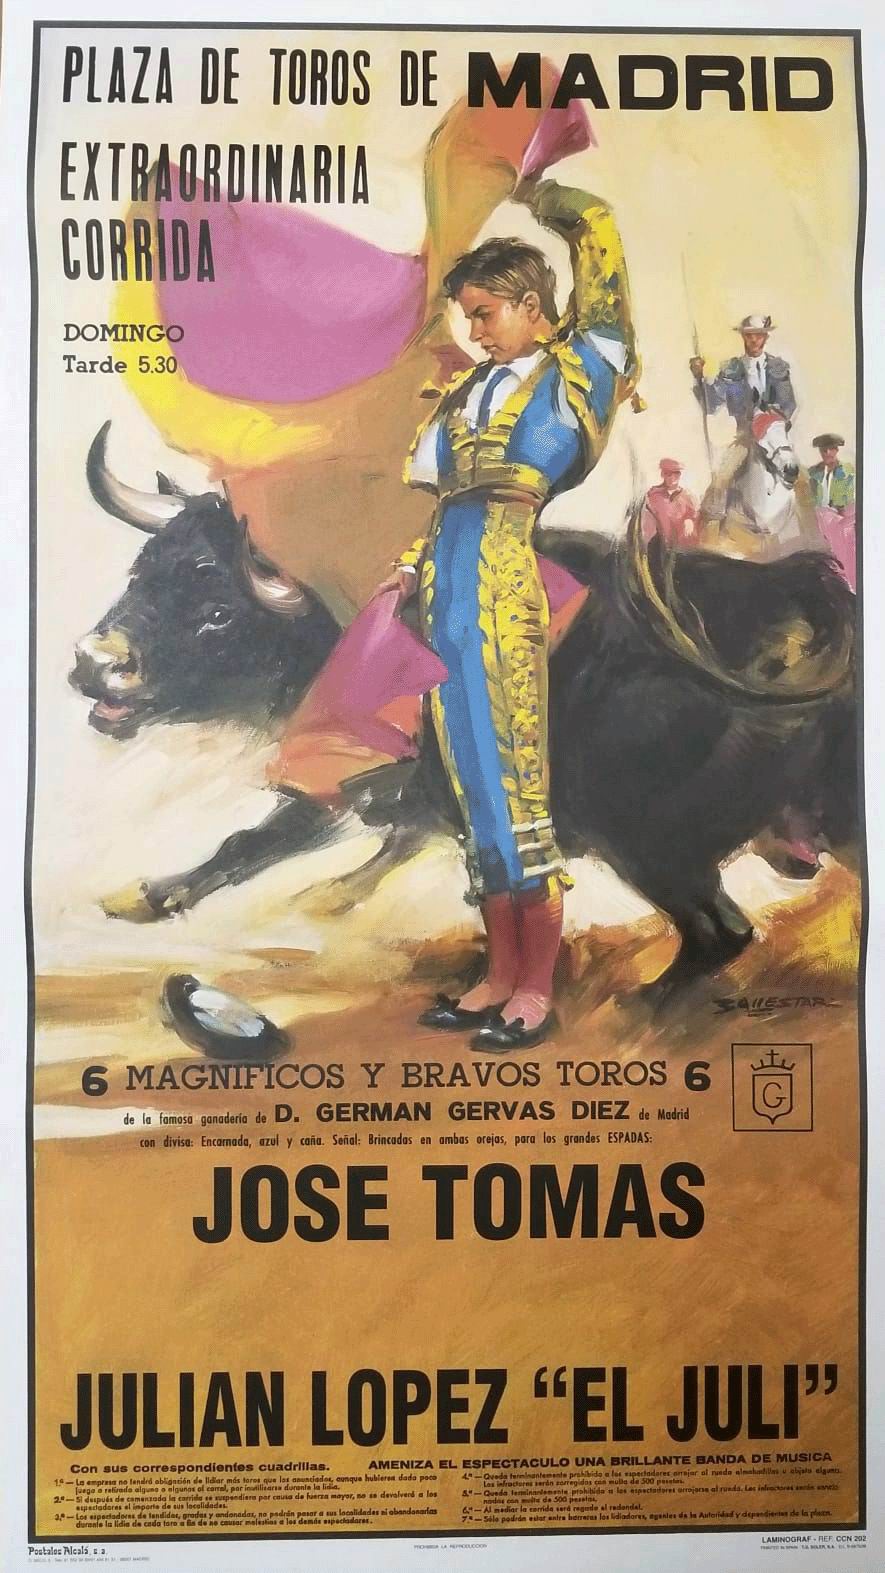 Poster de la Place de taureaux Monumental de Madrid. Toreros Jose Tomas y Julian López 